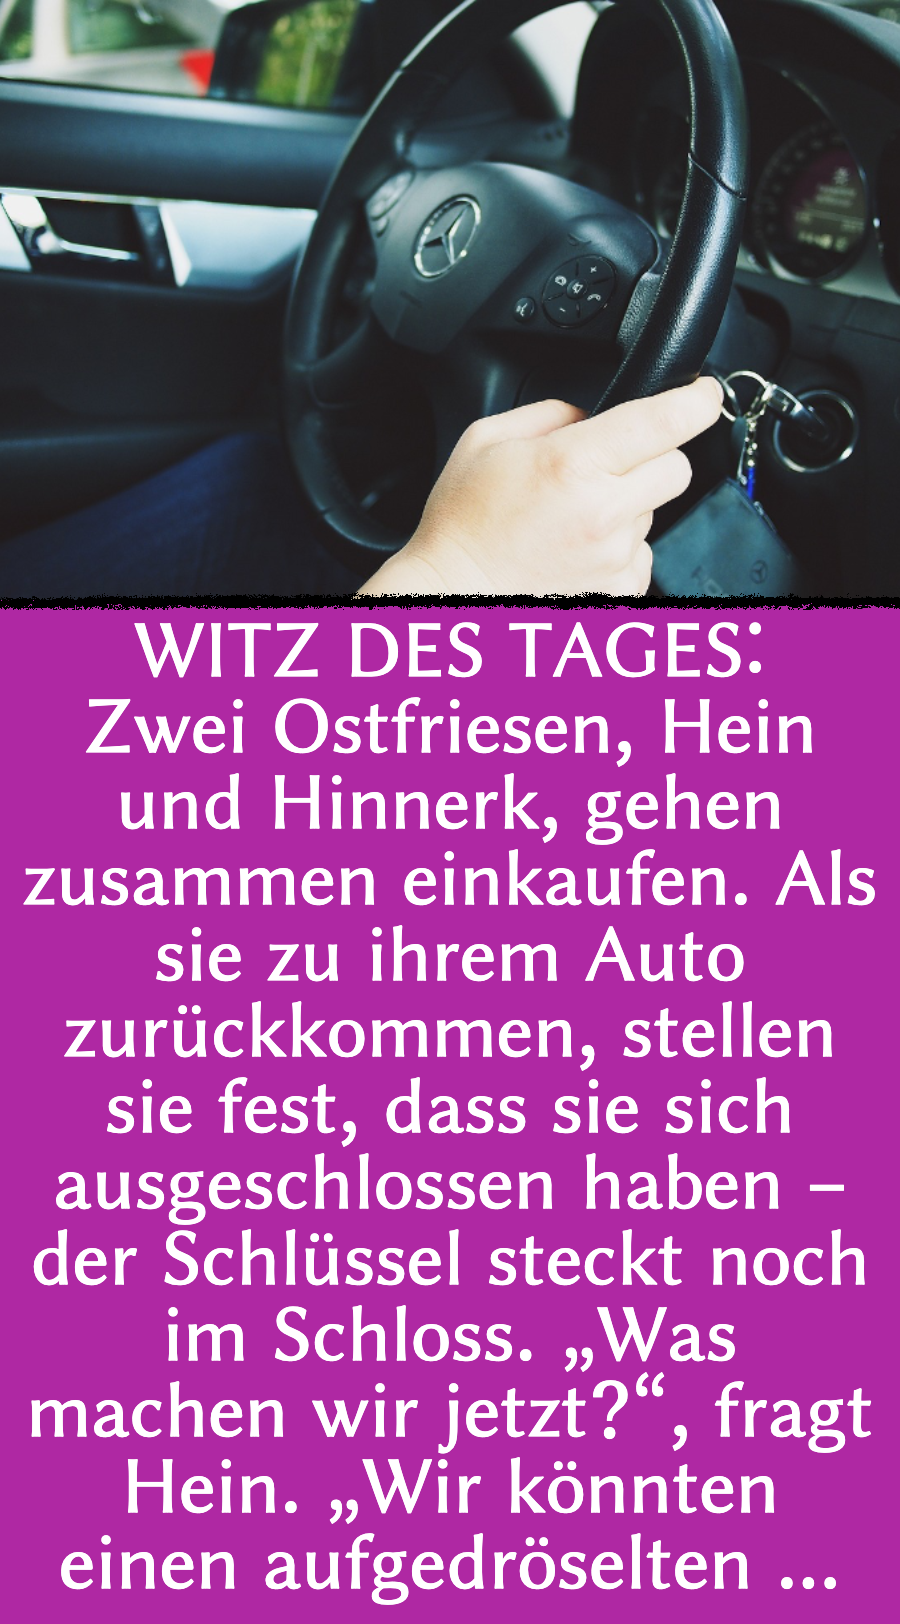 Ostfriesenwitz: Ostfriesen vergessen Schlüssel im Auto